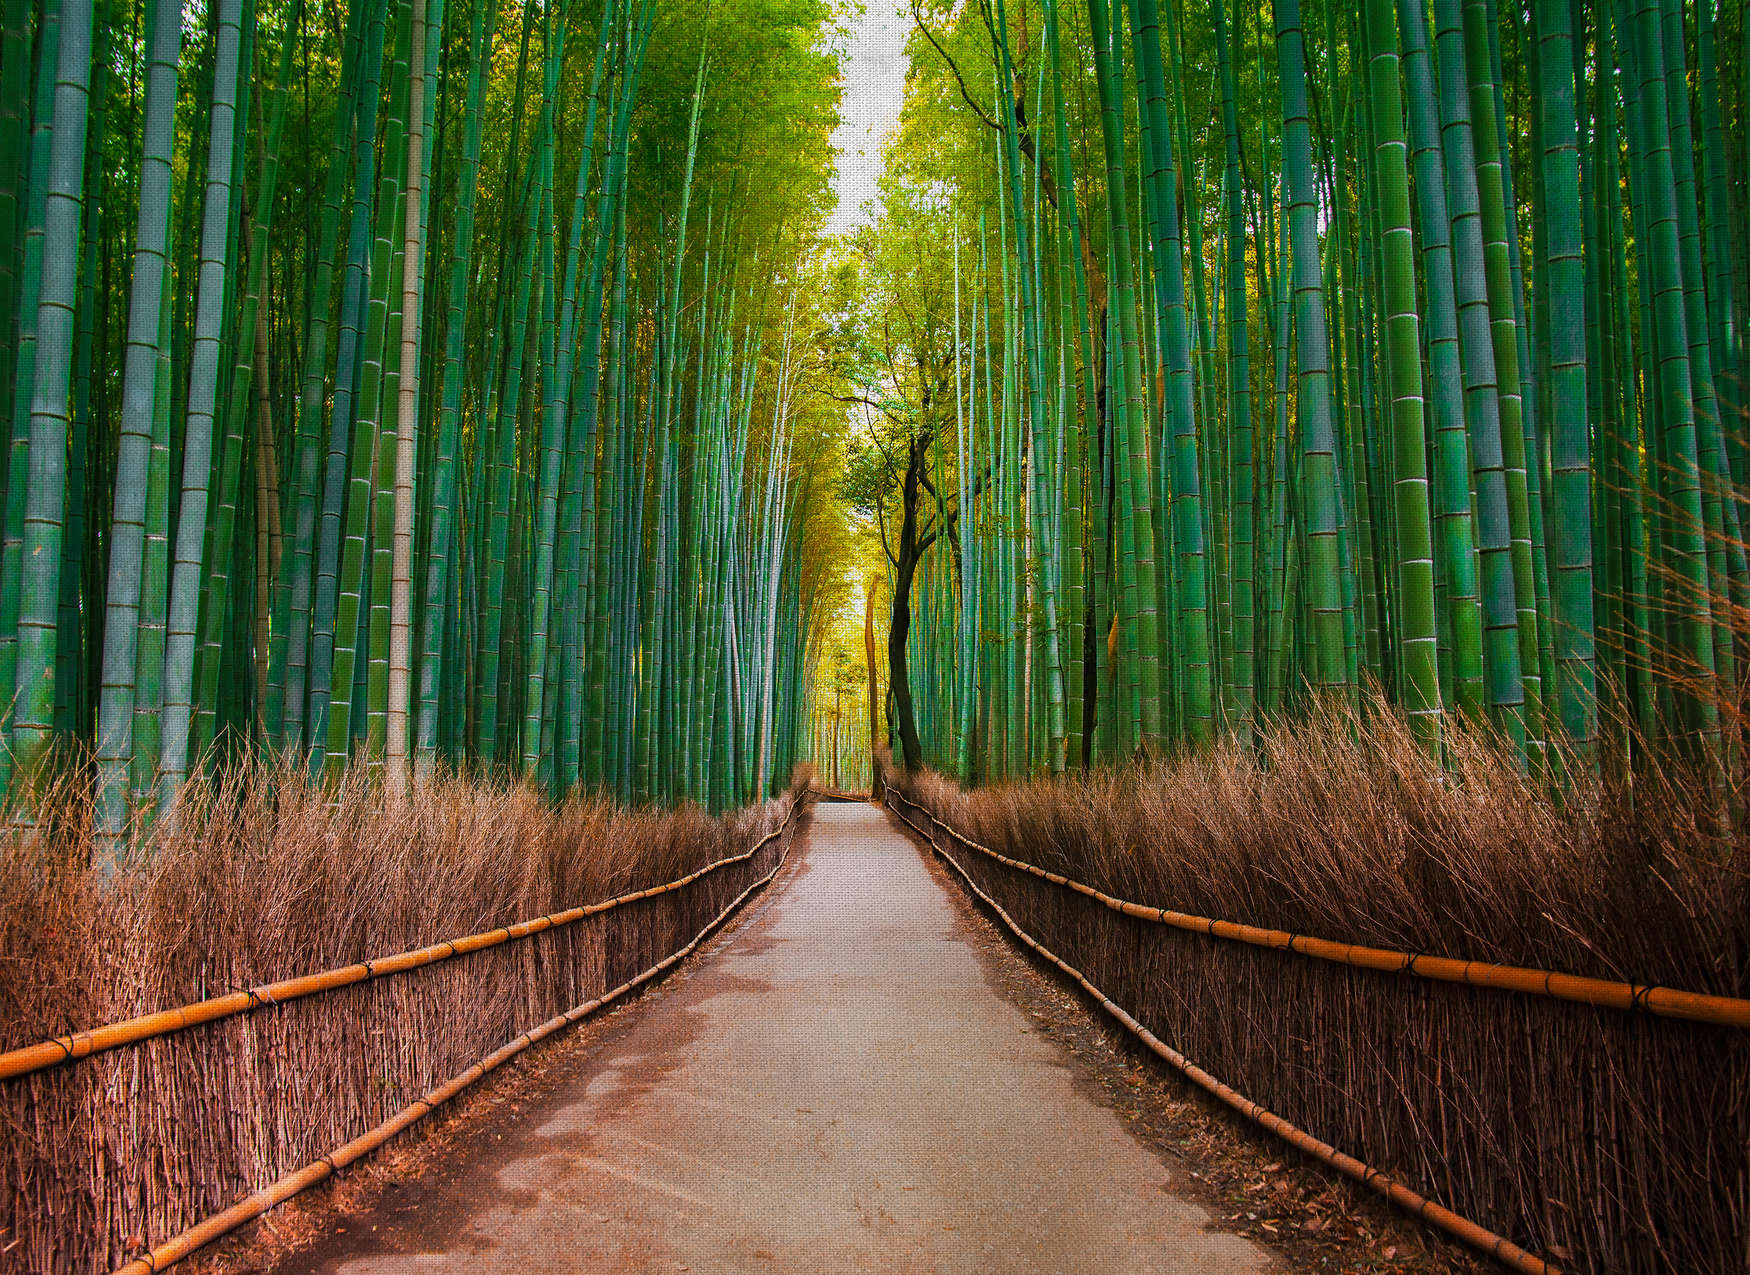             Natürliche Bildmotivtapete mit Bambusweg – Grün, Braun
        